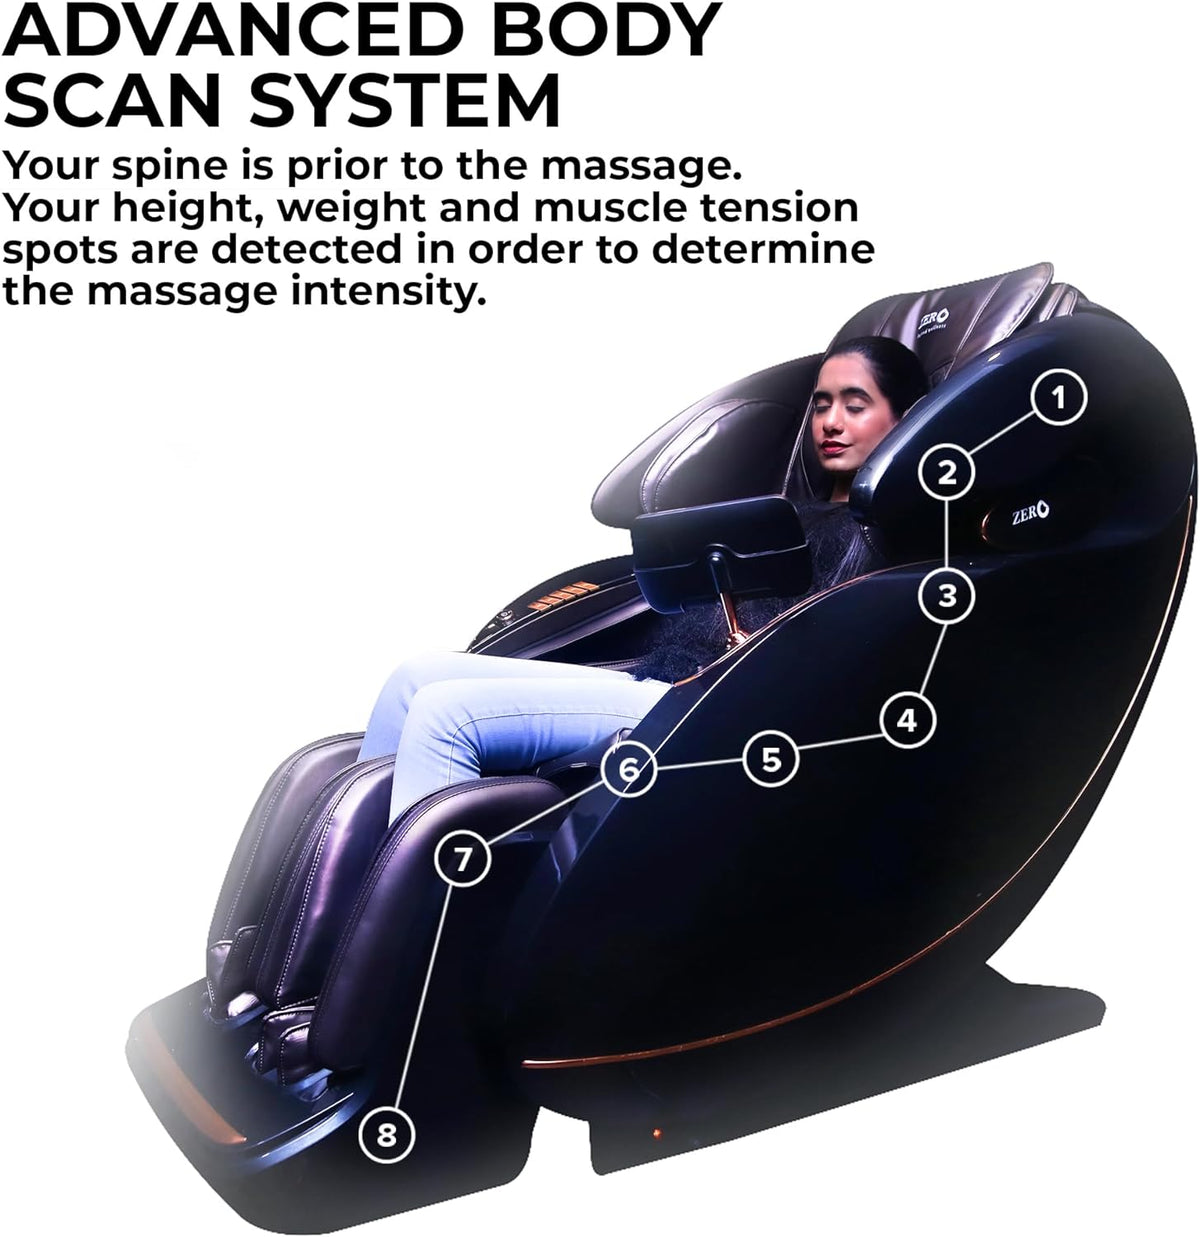 U-Space Massage Chair